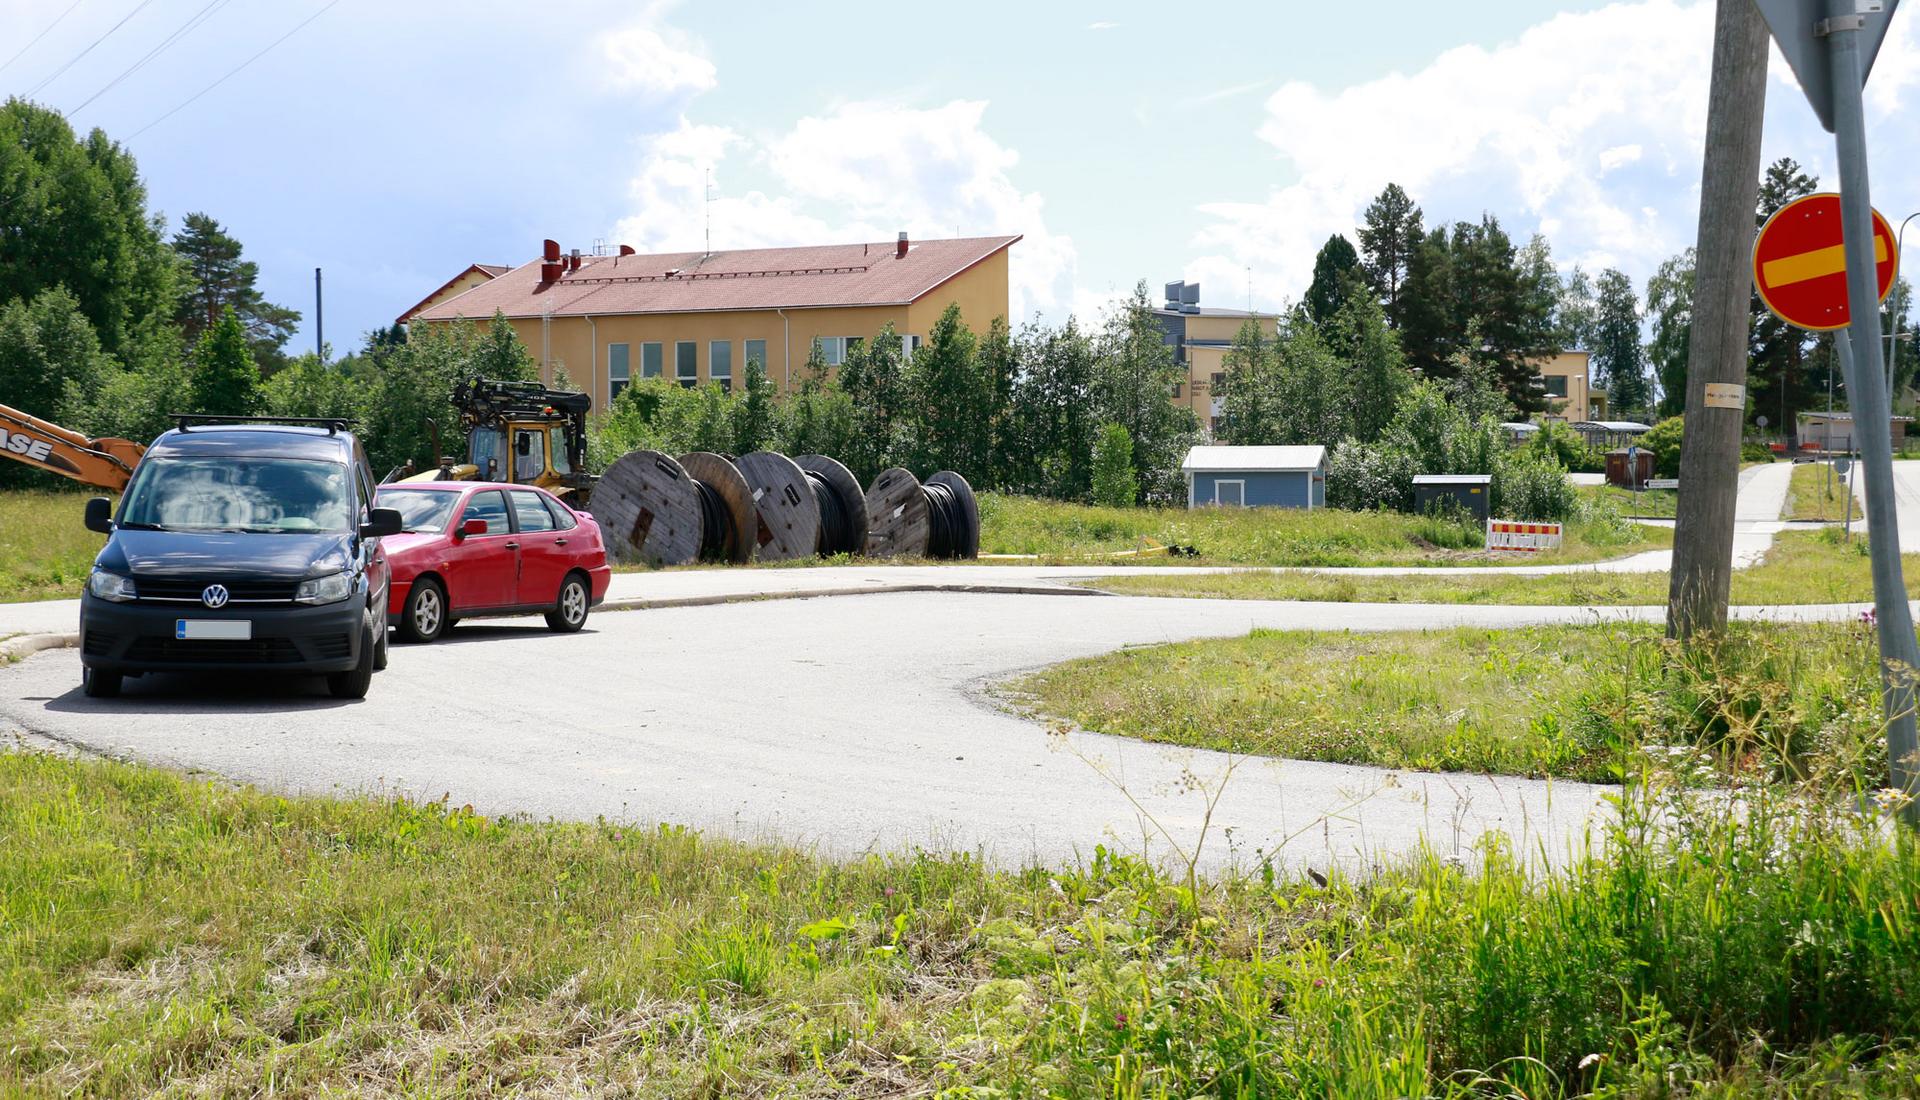 Moni on tottunut jättämään autonsa parkkiin Ahulinjärventien alkupäässä sijaitsevalle kääntöpaikalle lähtiessään esimerkiksi rullaluistelemaan.